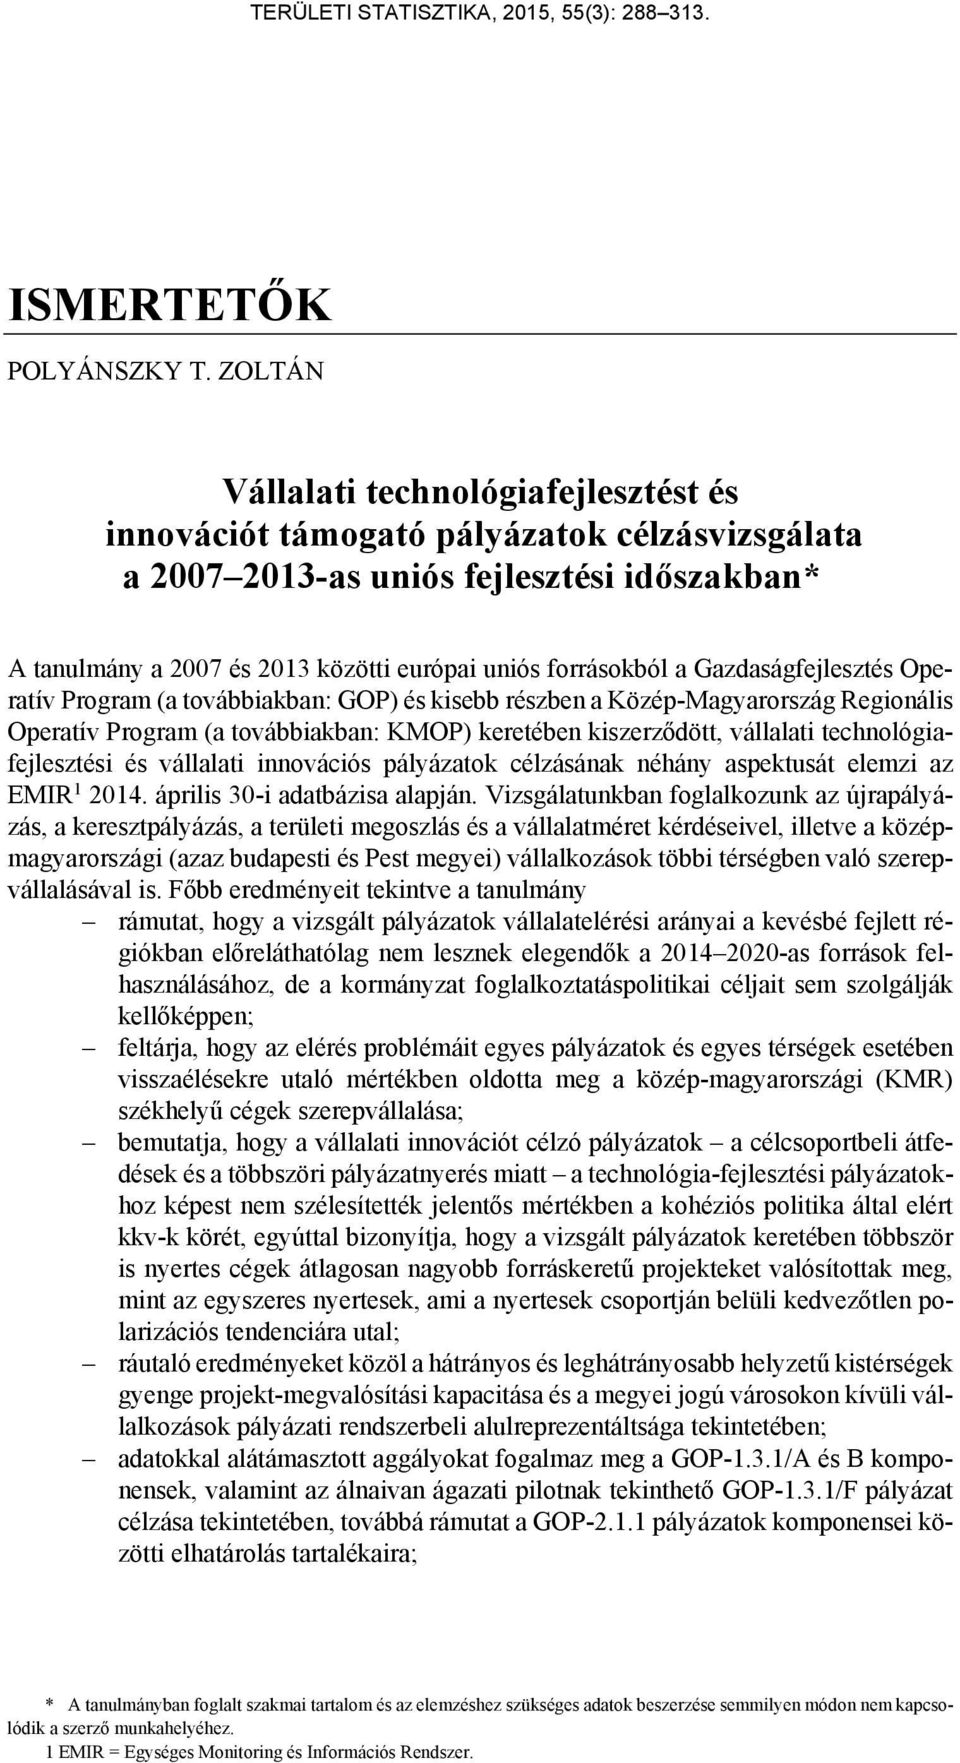 Gazdaságfejlesztés Operatív Program (a továbbiakban: GOP) és kisebb részben a Közép-Magyarország Regionális Operatív Program (a továbbiakban: KMOP) keretében kiszerződött, vállalati